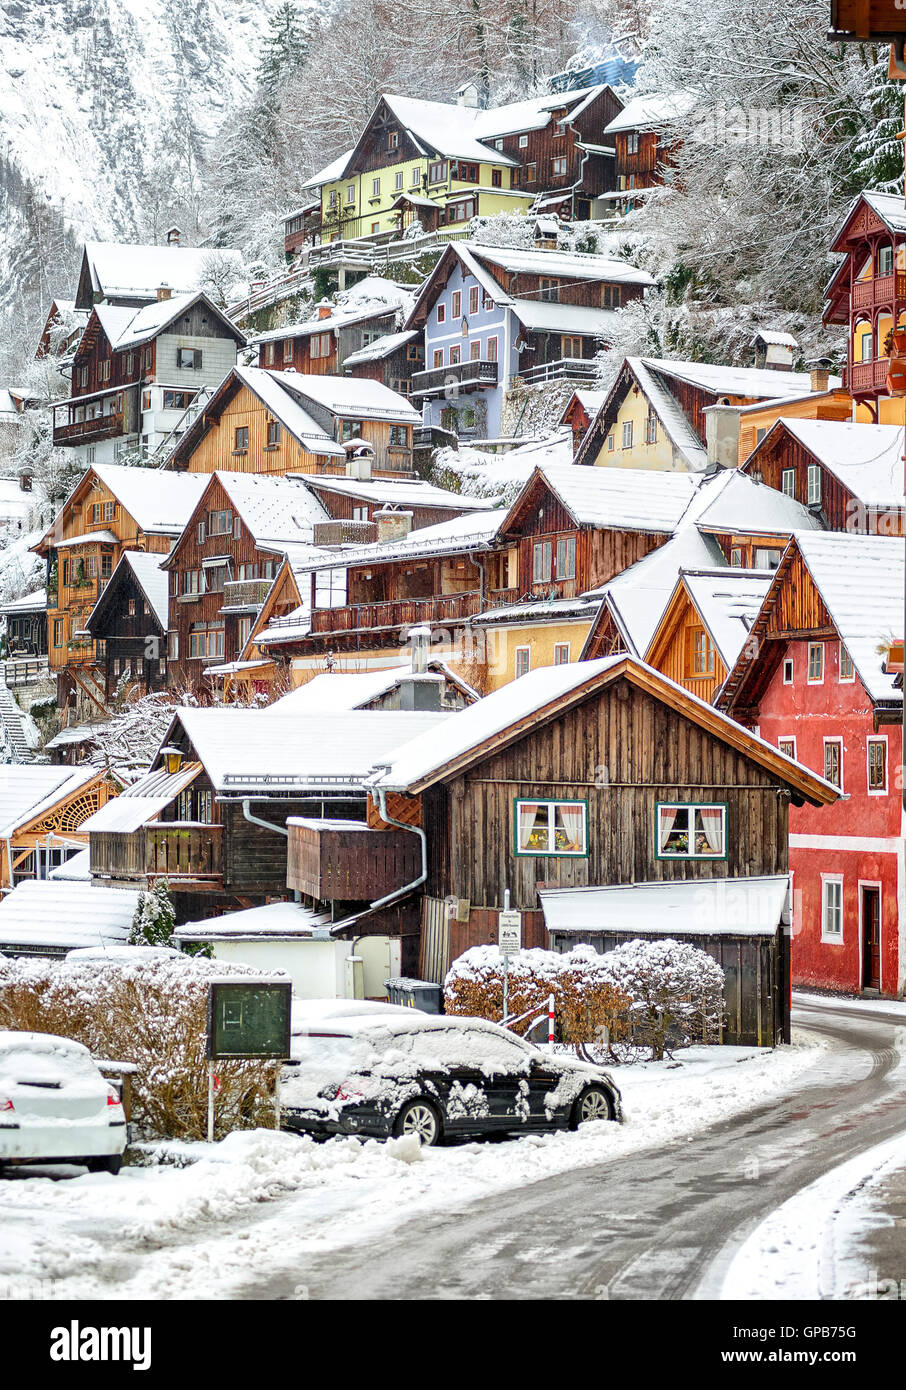 Wooden houses in Hallstatt, austrian alpine village by Salzburg, Austria Stock Photo